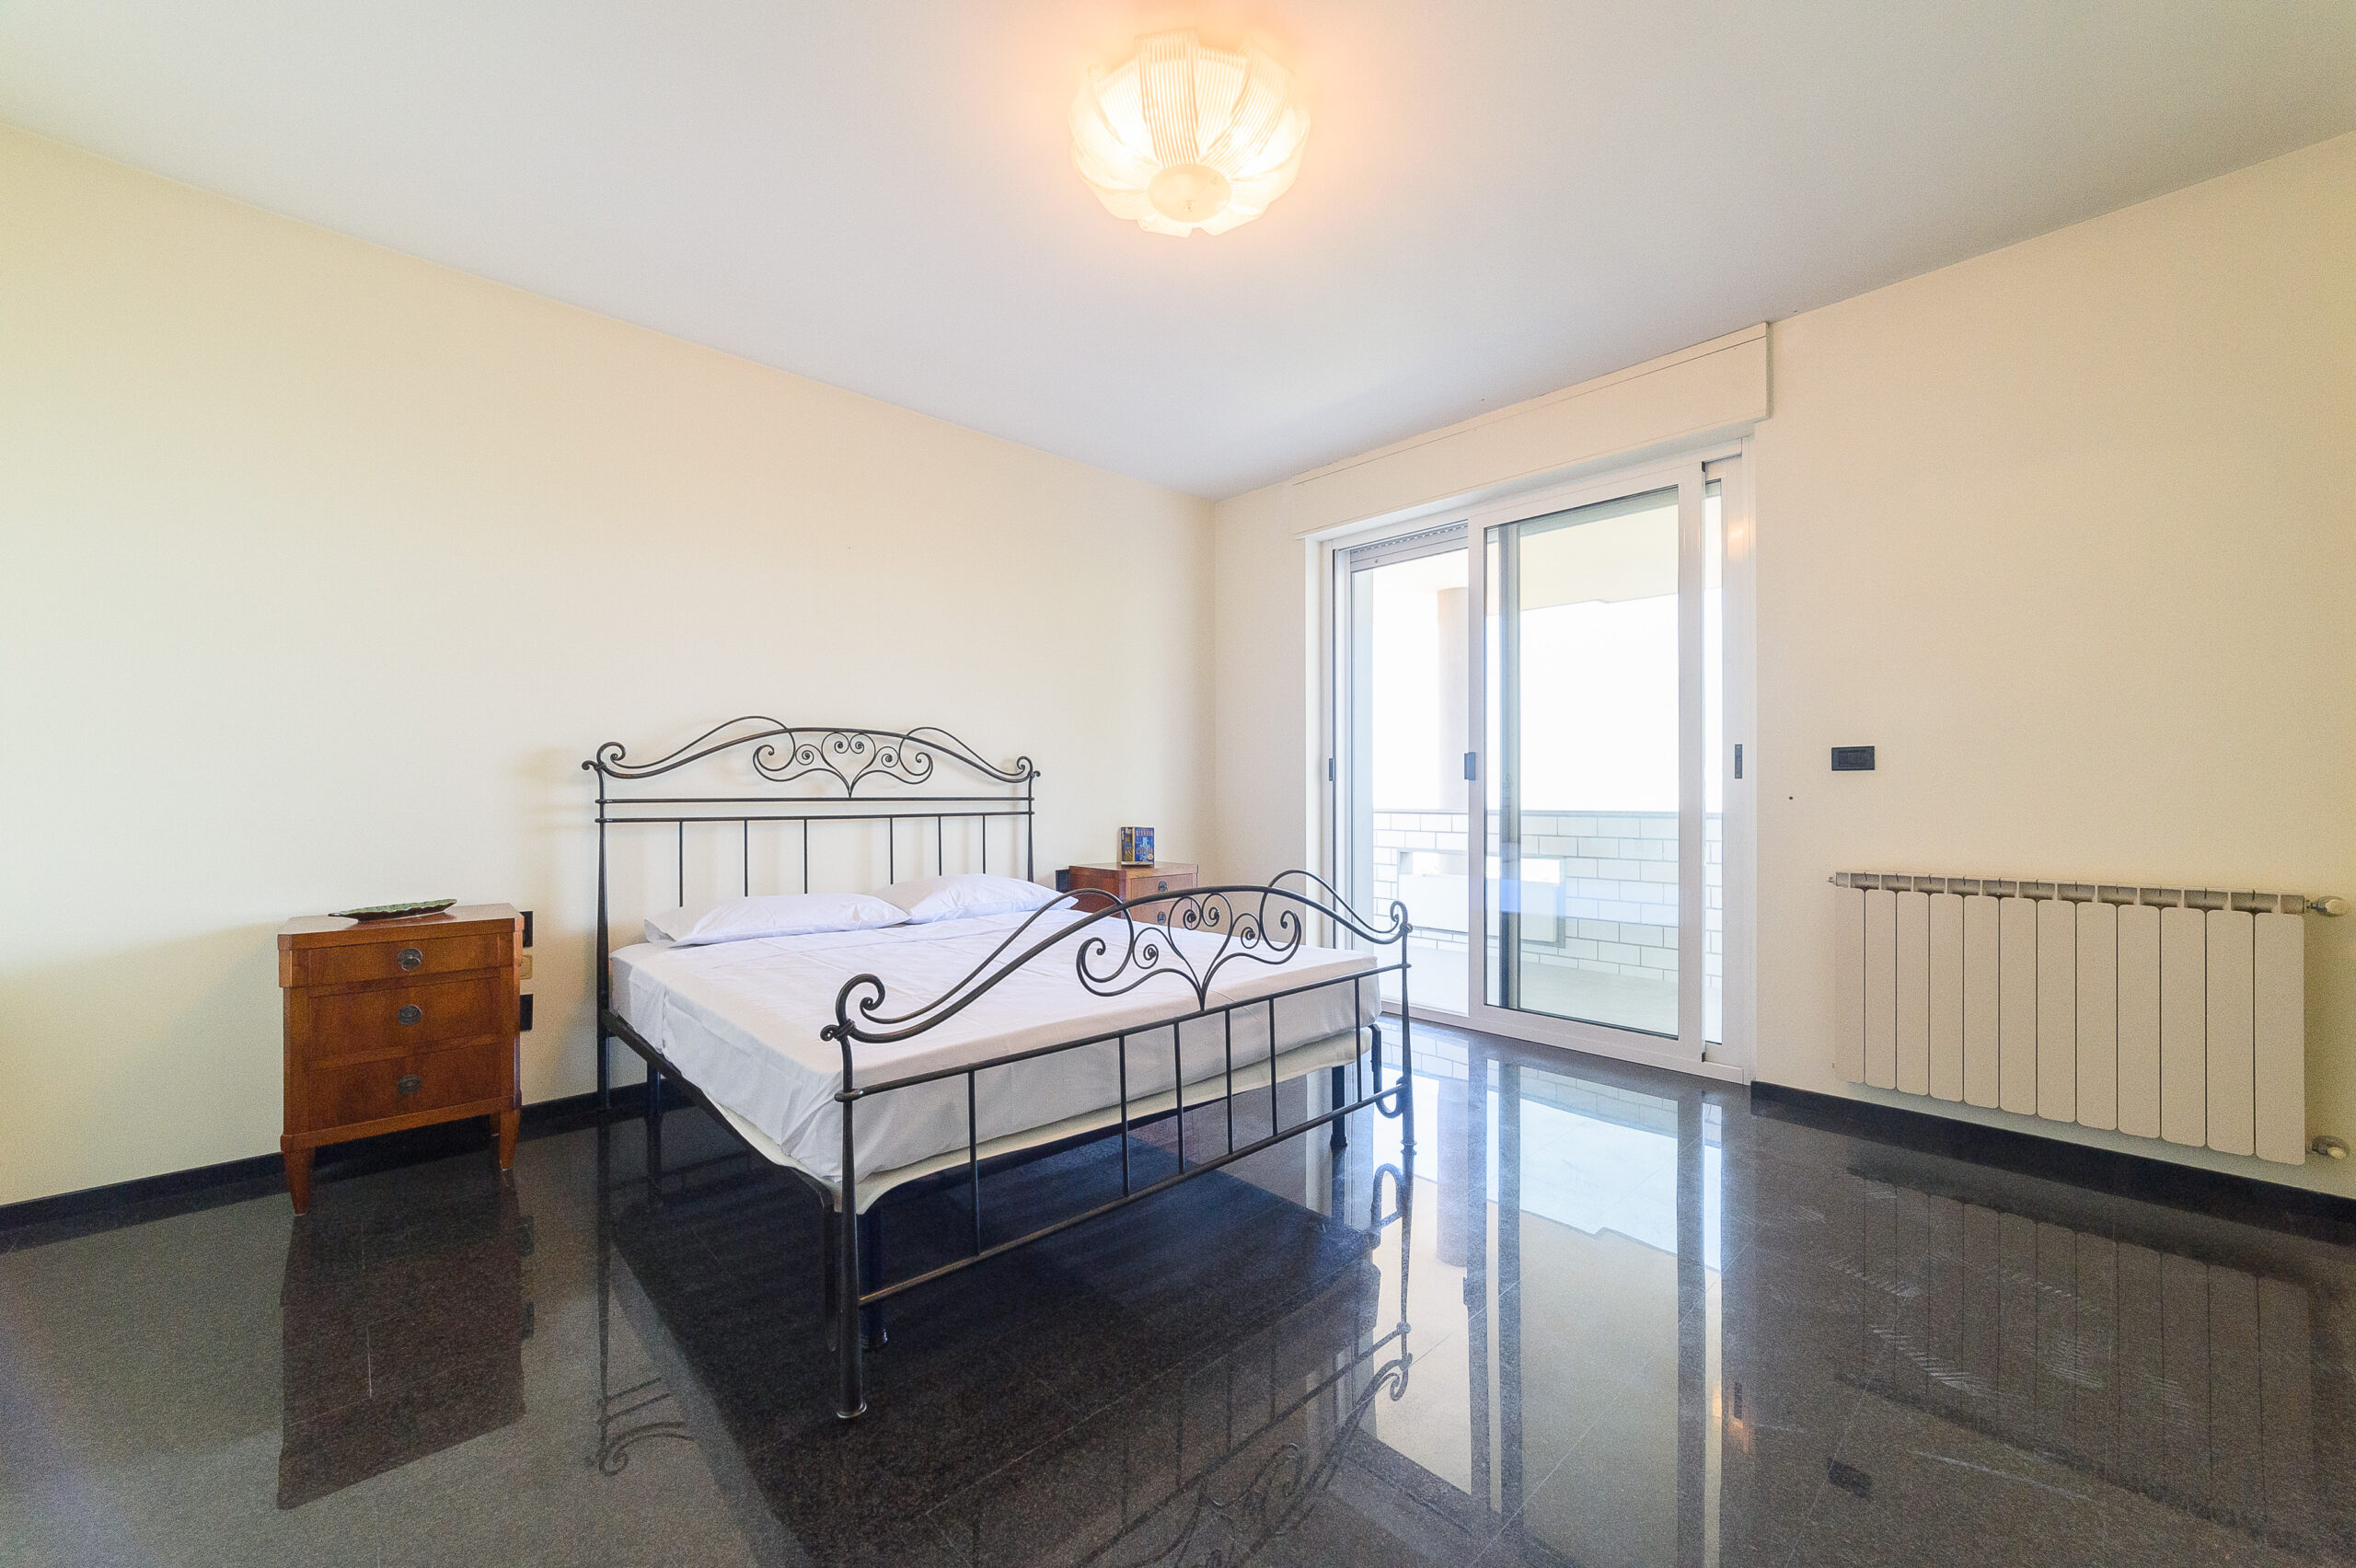 Camera con vista panoramica presso il Bed and Breakfast Pescara Colli